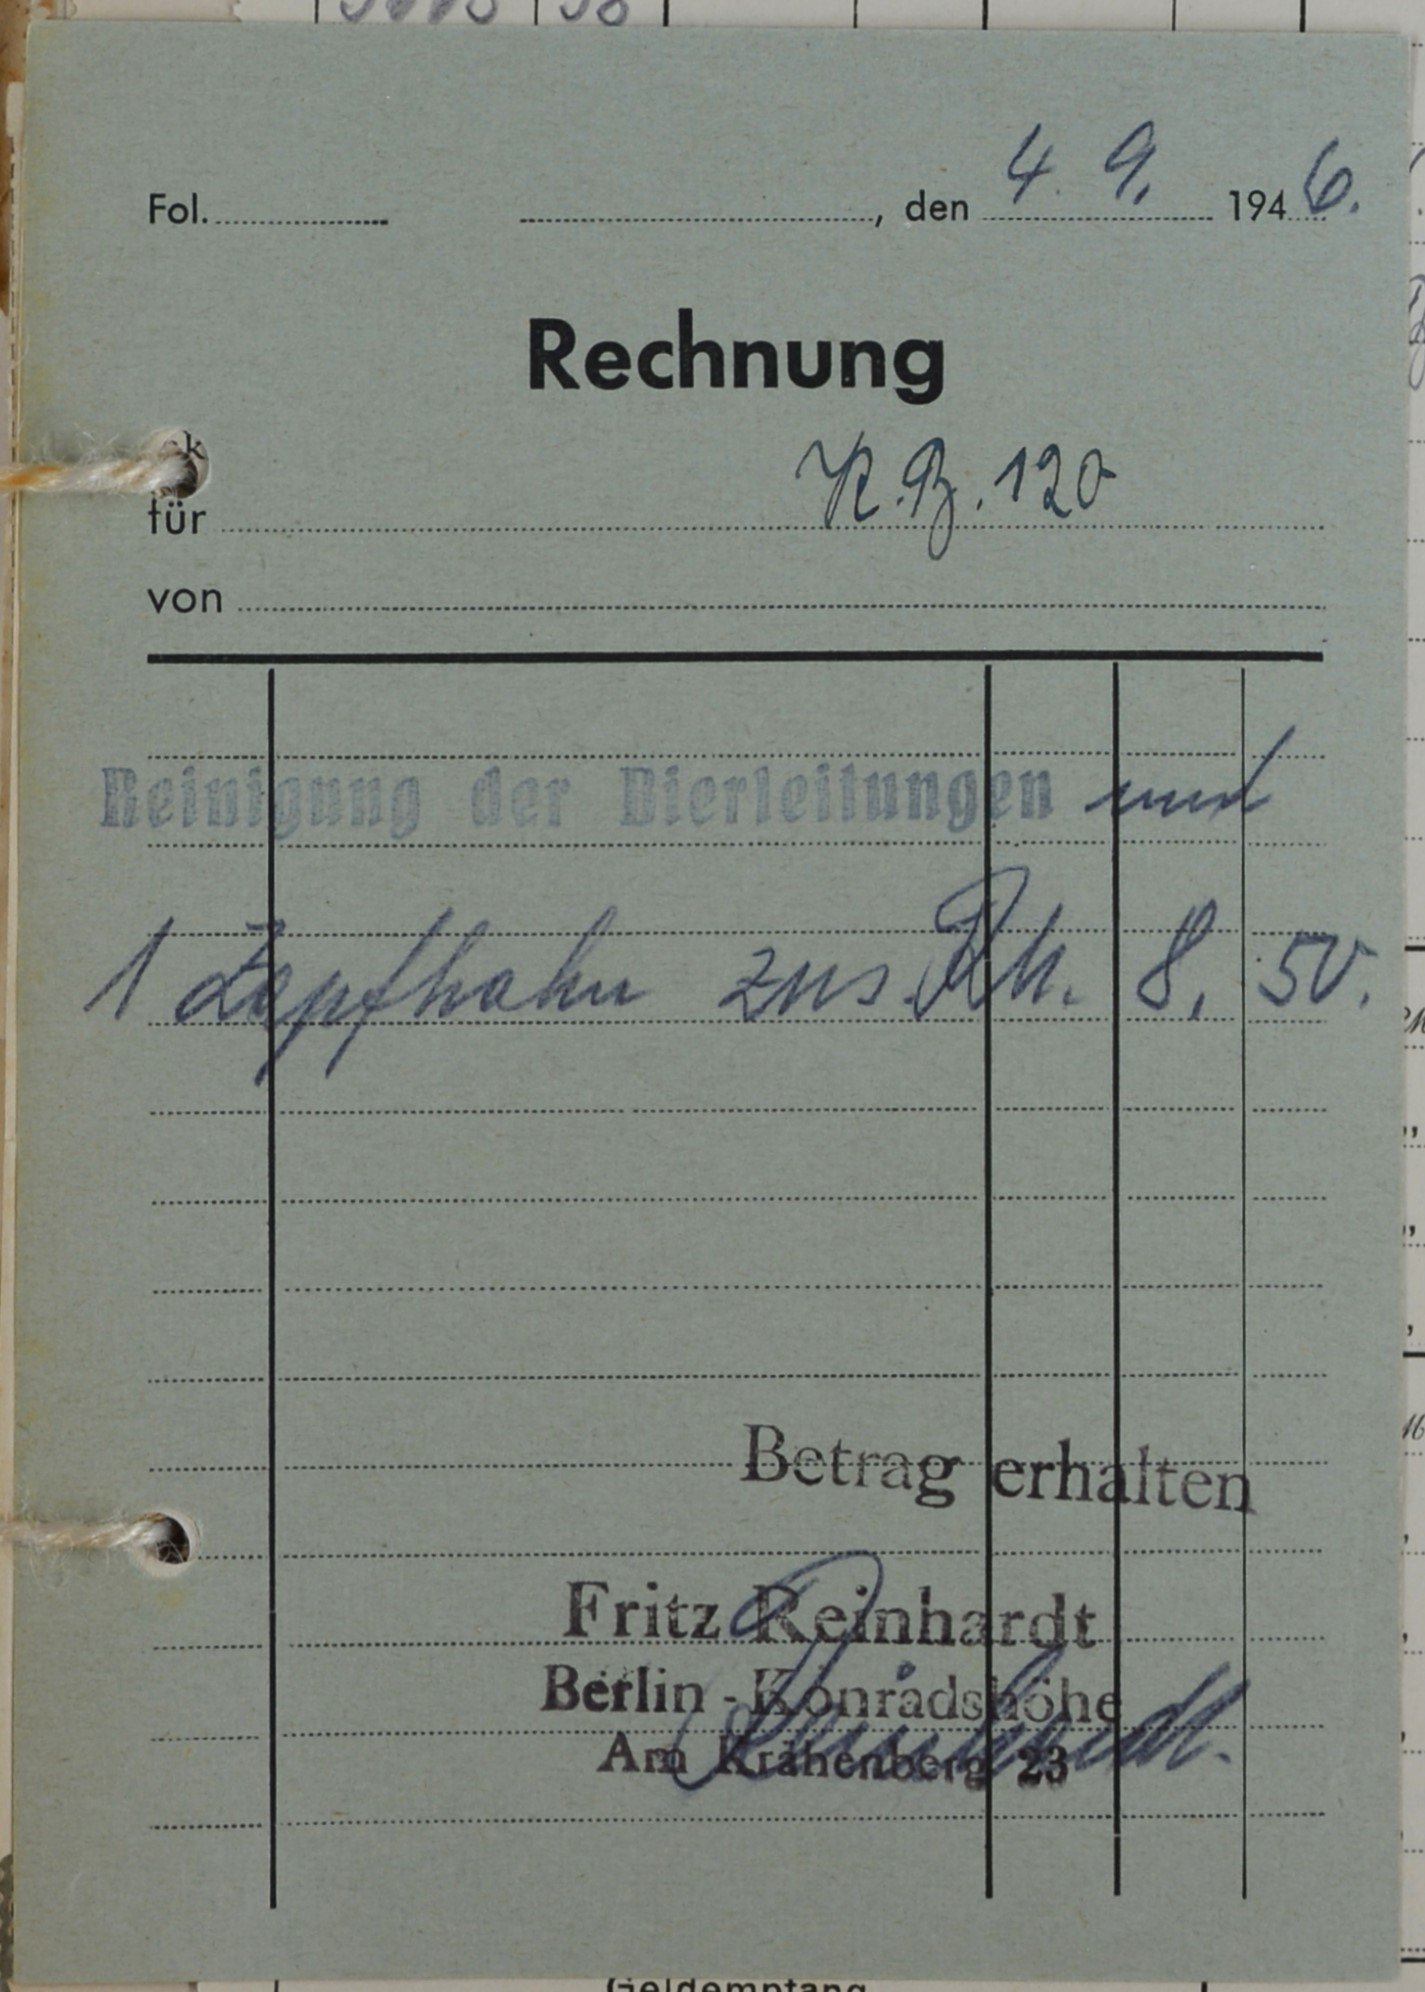 Rechnung von Fritz Reinhardt aus Berlin-Konradshöhe für Wilhelm Breitkreuz (DDR Geschichtsmuseum im Dokumentationszentrum Perleberg CC BY-SA)